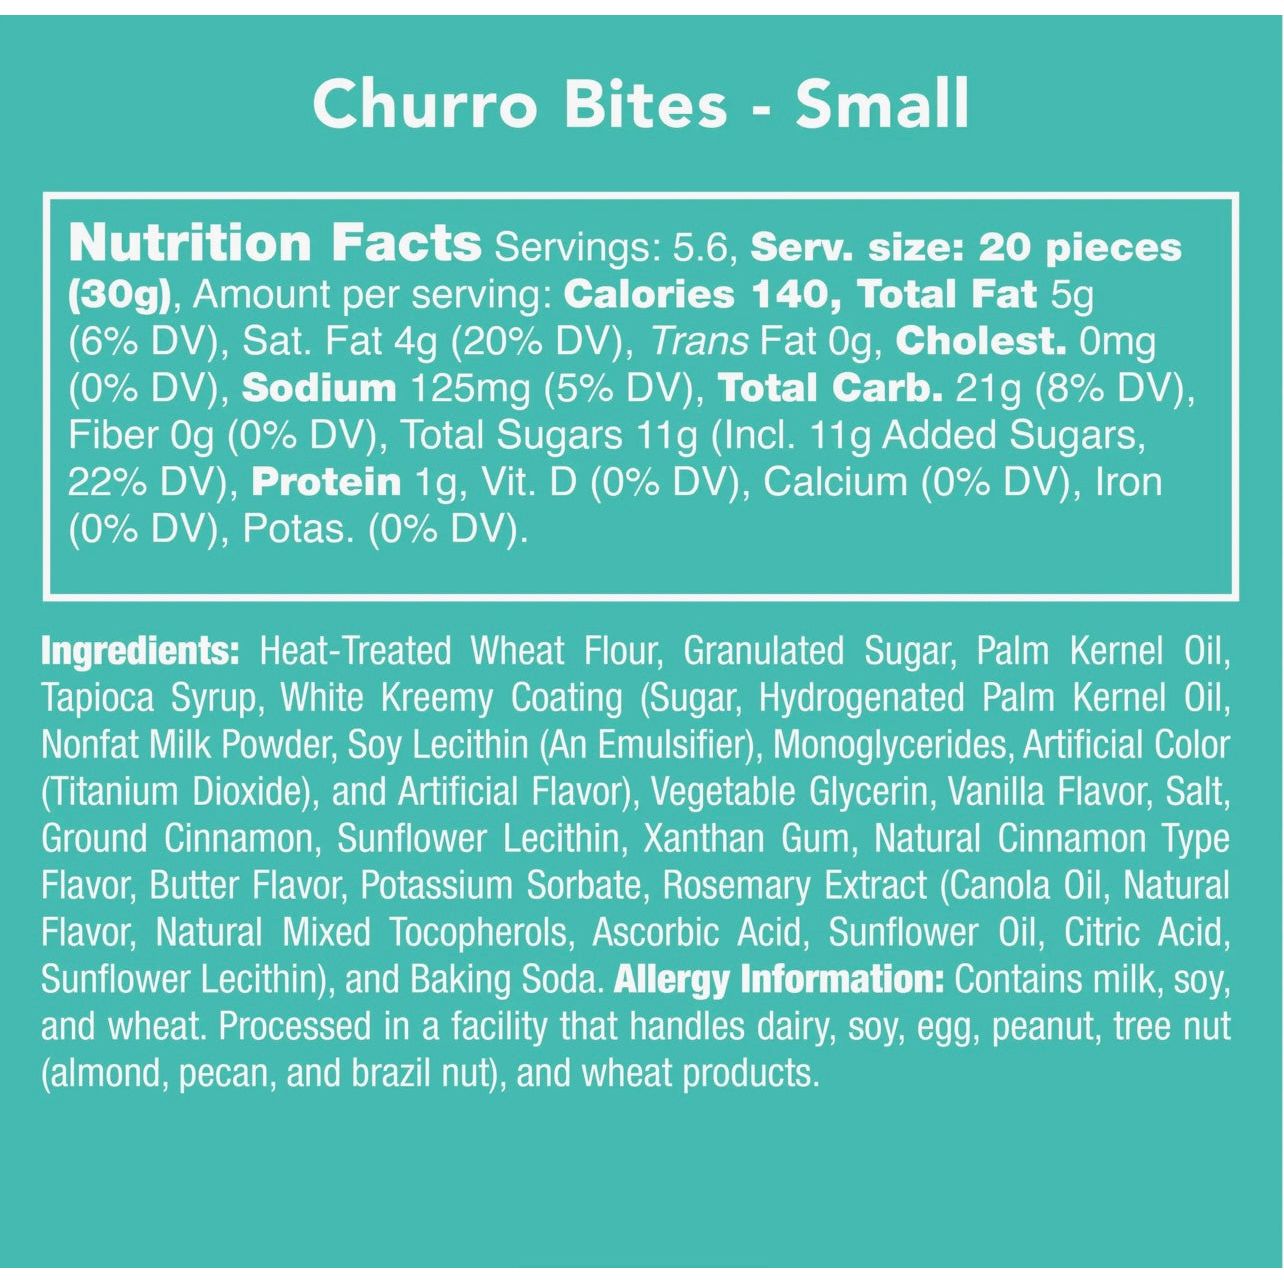 Churro bites